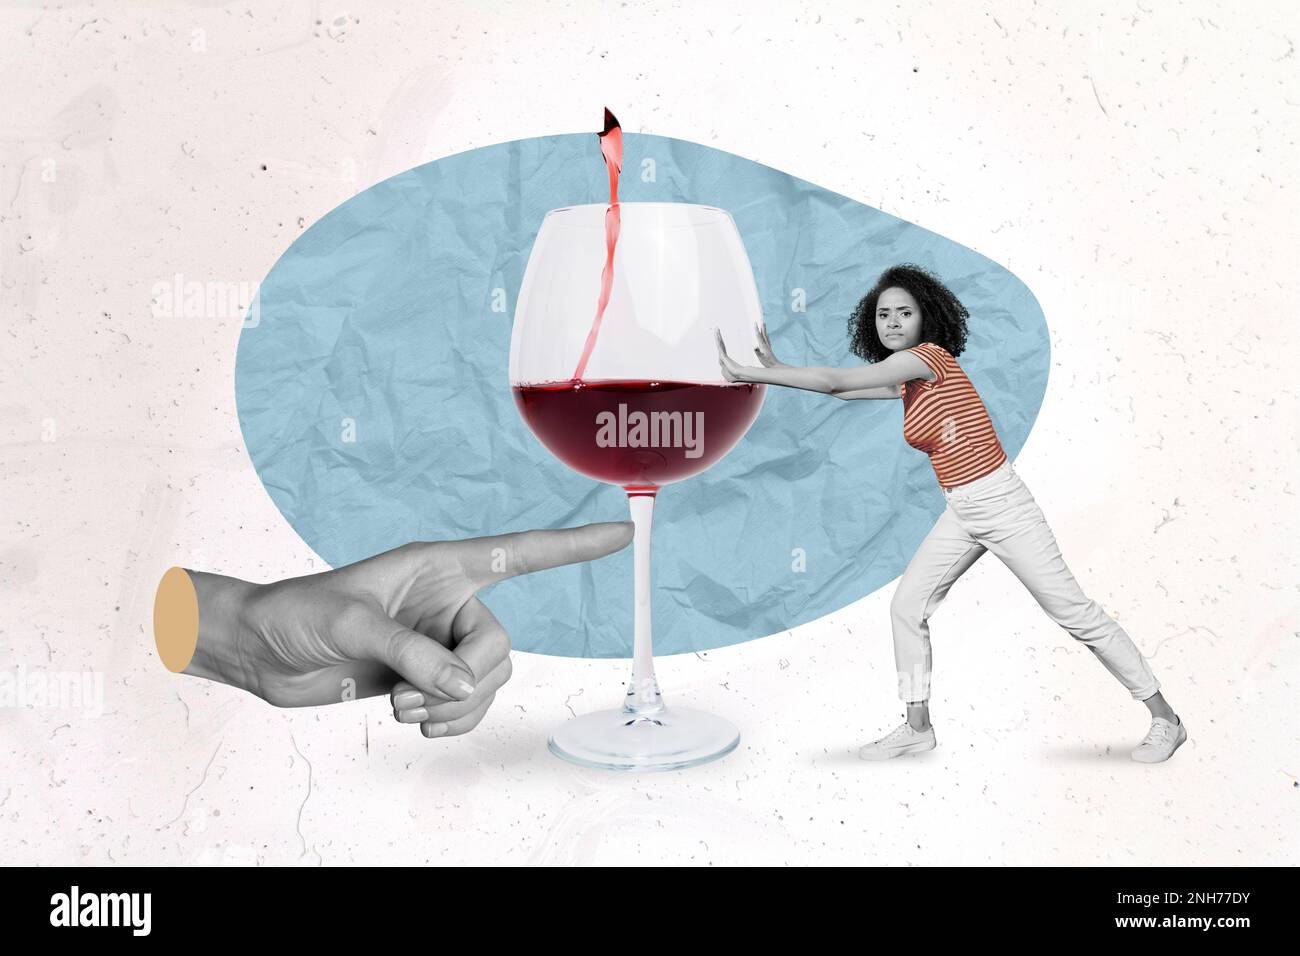 Immagine creativa collage di braccio enorme dito spingere vino vetro mini ragazza resistere rifiuto isolato su sfondo dipinto Foto Stock